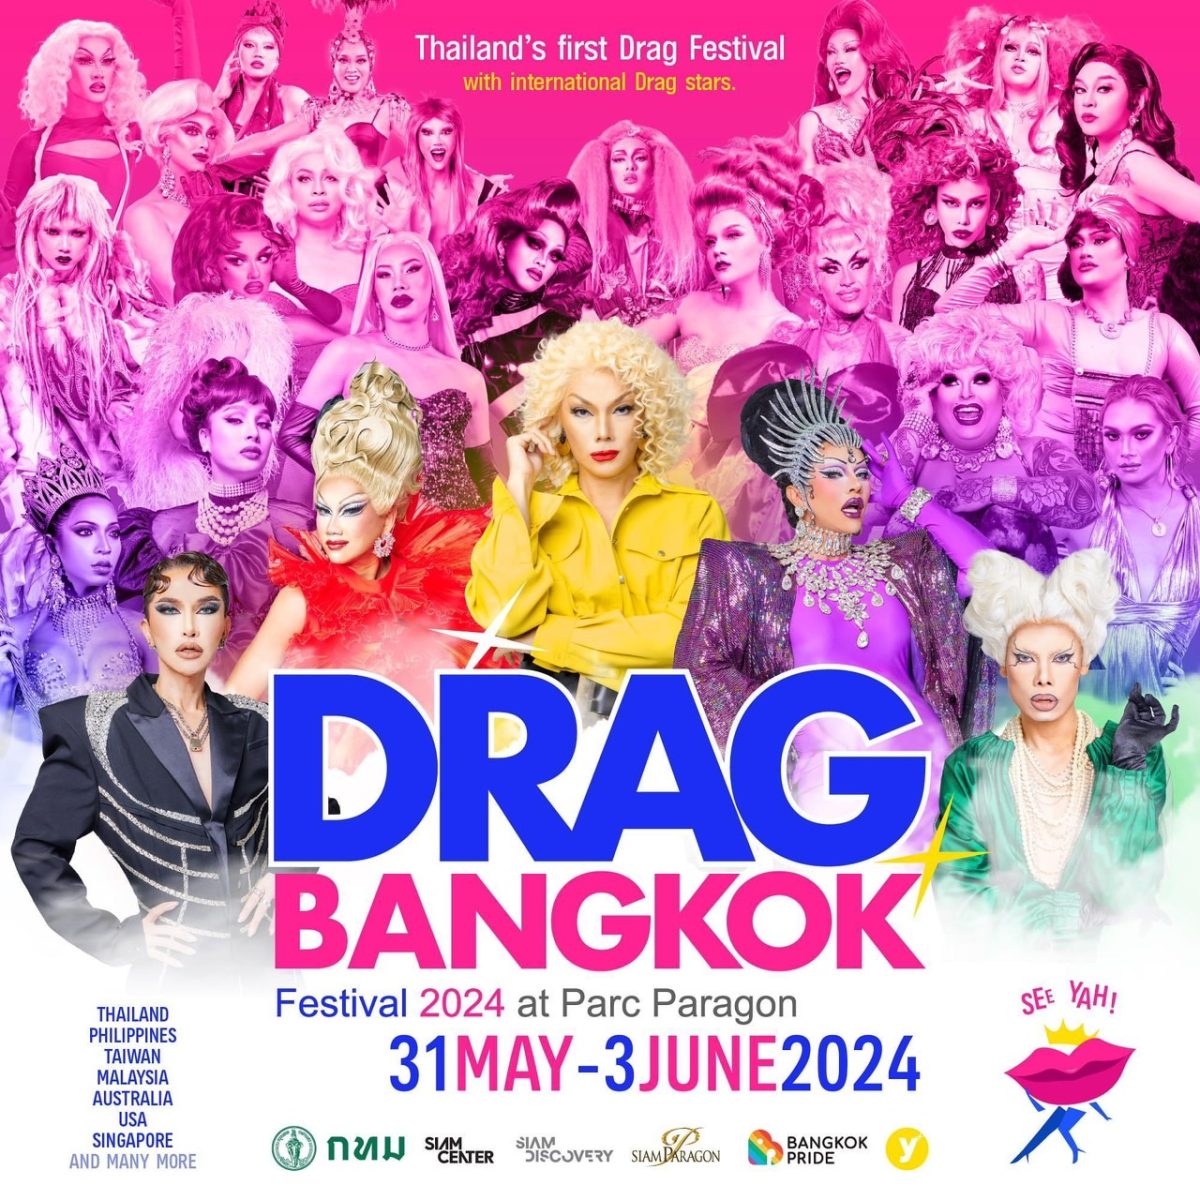 สยามพารากอน ผนึกกำลัง บางกอกไพรด์ ฉลองเดือนแห่งไพรด์ เปิดเวที Bangkok Pride Forum กว่า 30 หัวข้อ และ Drag Bangkok Festival 2024 ครั้งแรกในเอเชีย!! 31 พ.ค. - 4 มิ.ย. 2567